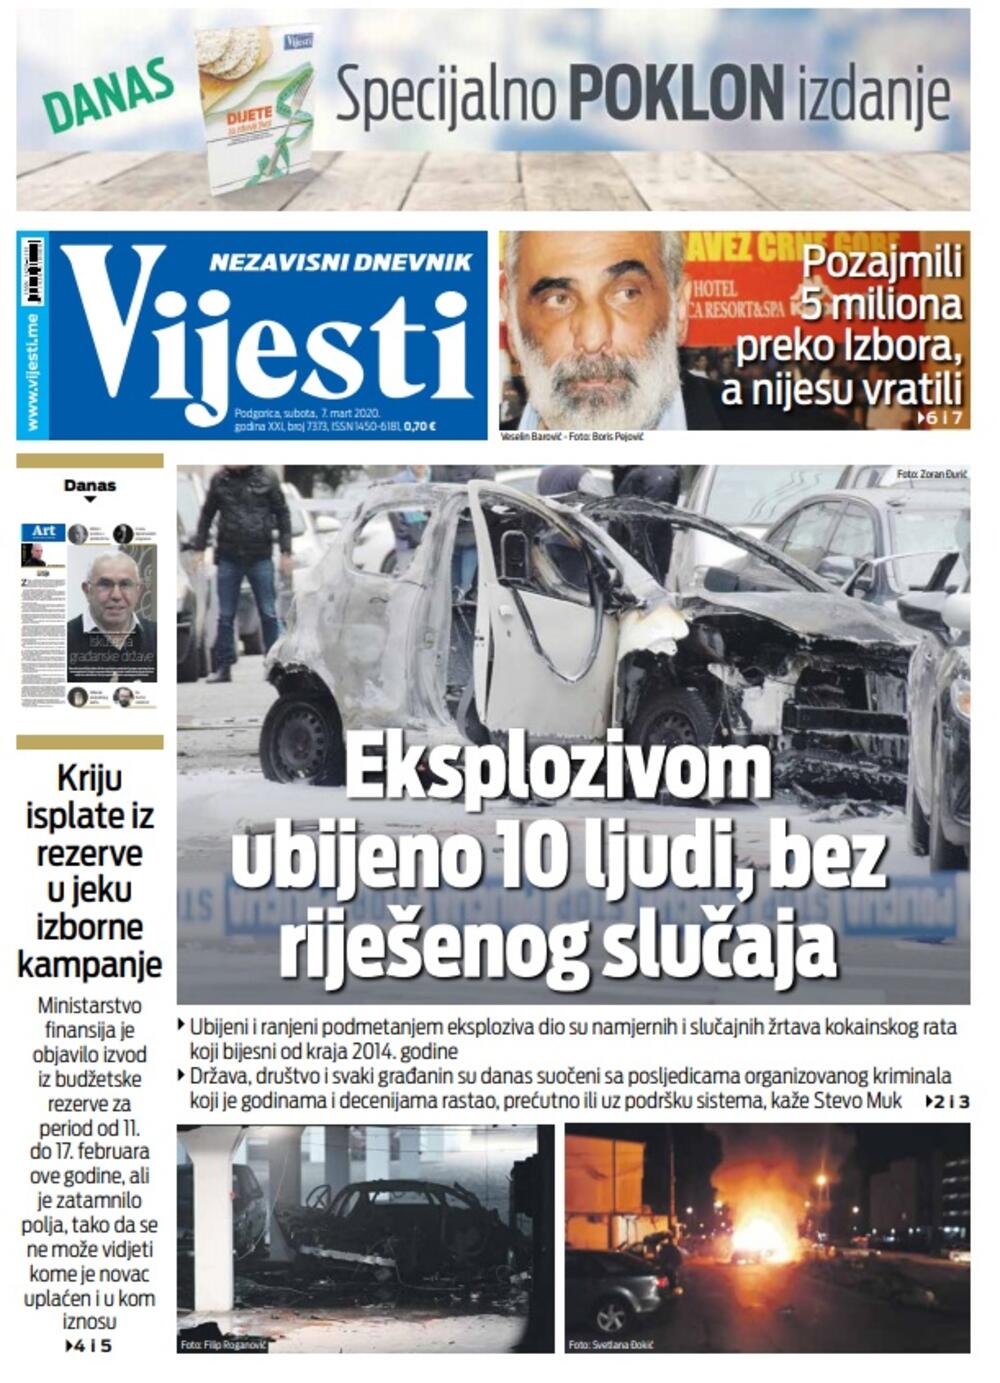 Naslovna strana "Vijesti" za 7. mart 2020. godine, Foto: "Vijesti"